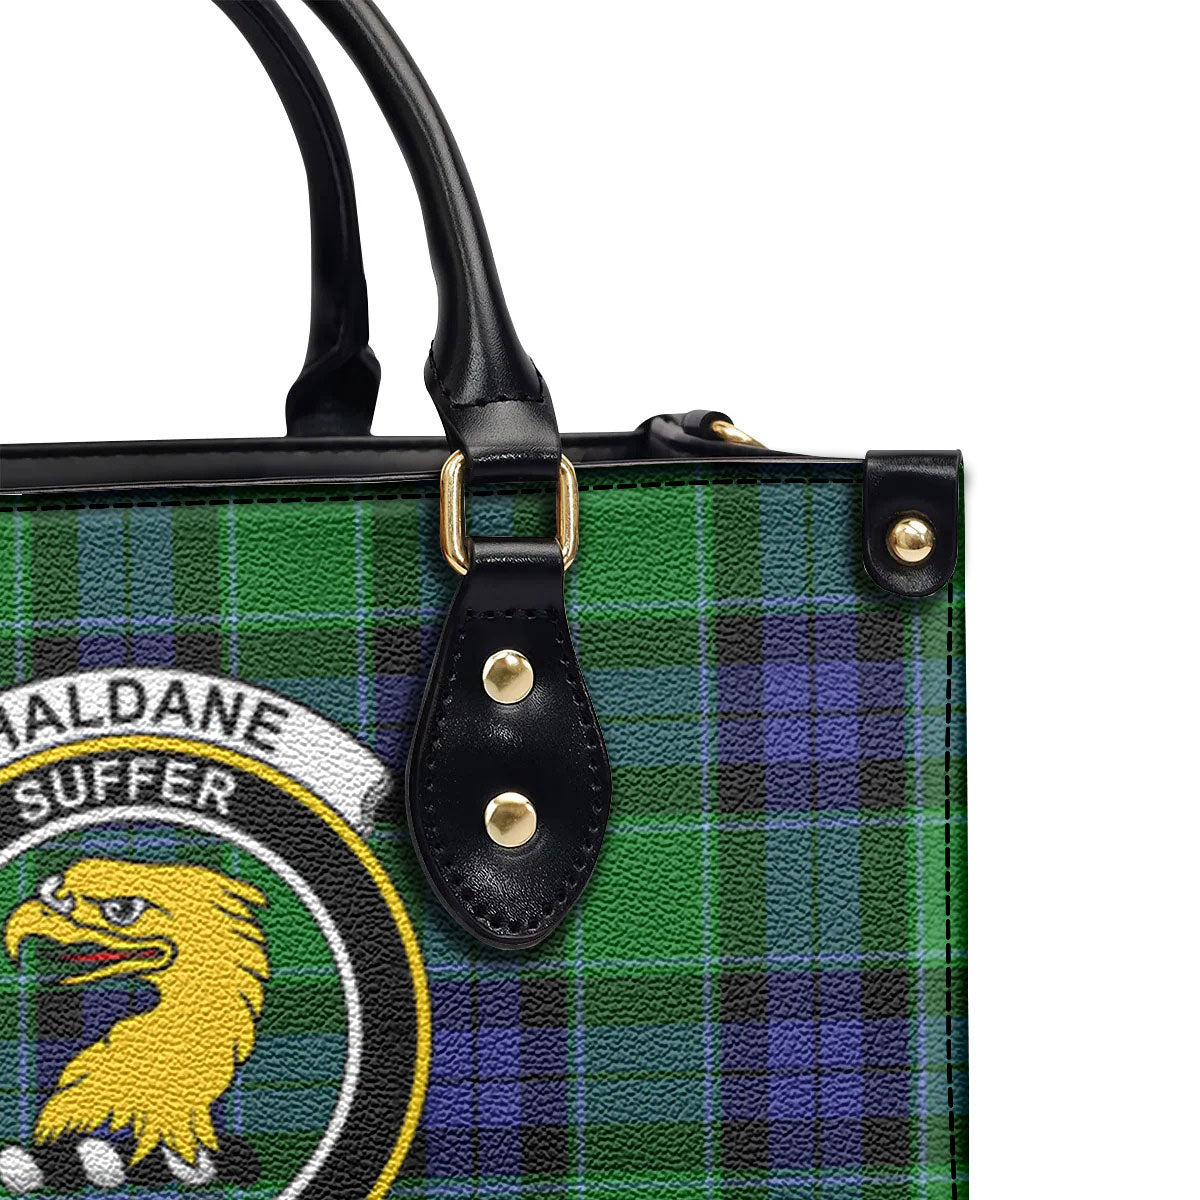 Haldane Tartan Crest Leather Handbag